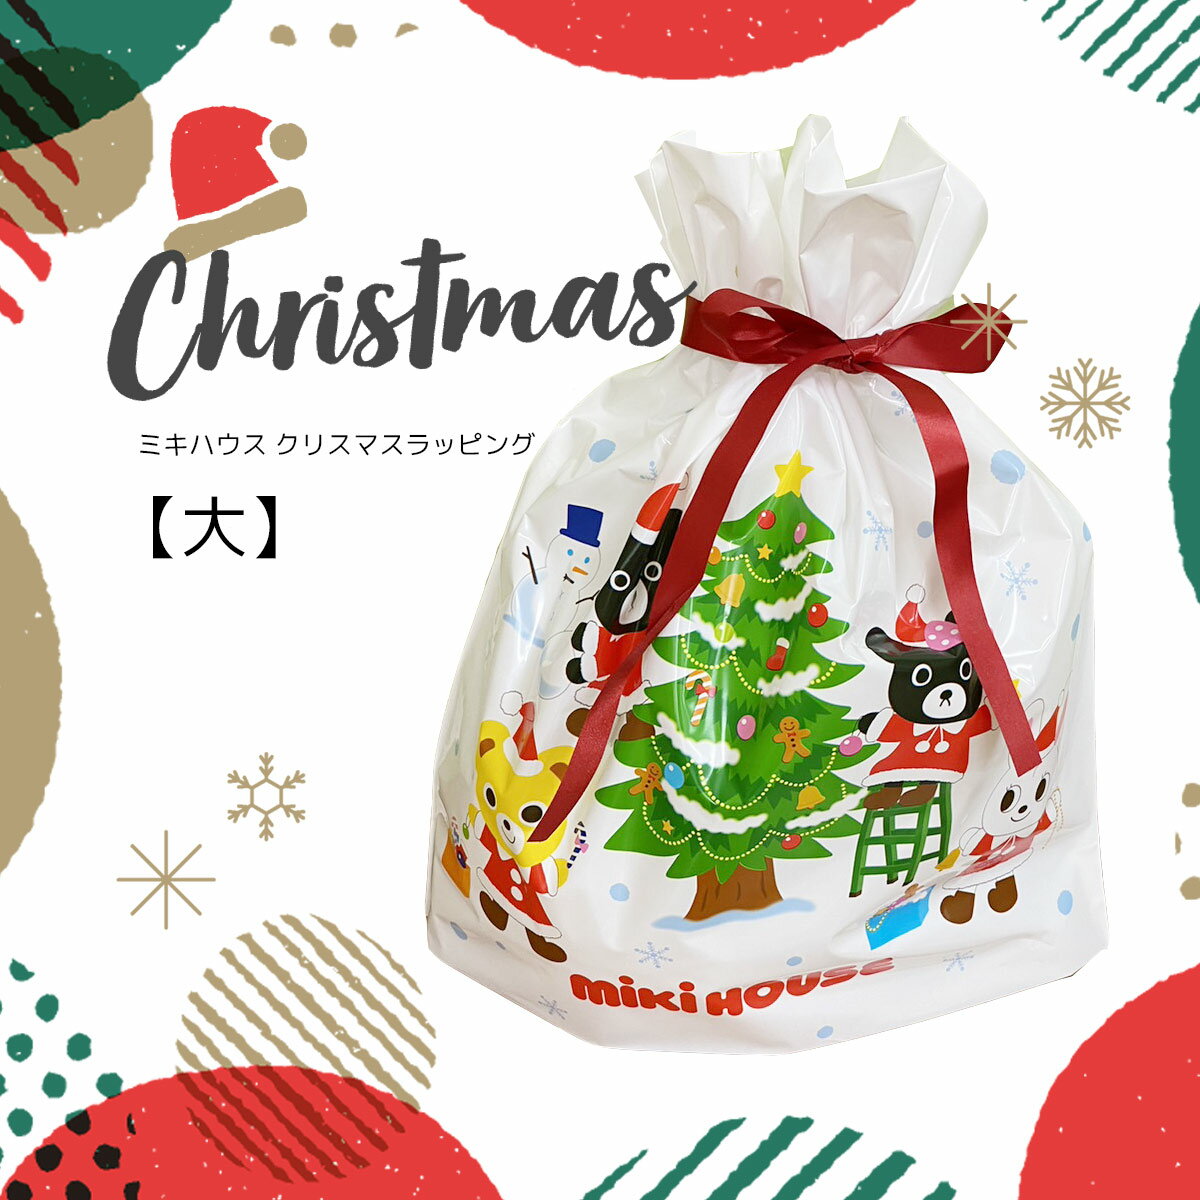 商品について ミキハウスブランドの商品にぴったりなクリスマスギフトラッピングサービスです。 ご購入商品のブランドに適したクリスマス仕様の巾着袋にお入れいたします。 ※ショッパーをご希望の場合は、有料となります。 　ナイロン製ショッパー　1枚55円(税込) 　紙袋製ショッパー(通常デザイン)　　　1枚110円(税込) 　紙袋製ショッパー(クリスマスデザイン)　　　1枚110円(税込) お値札を外した状態でラッピングし、納品書などお値段のわかるものは同封致しません。 ご注文内容によりましては、その他のラッピングサービスに変更をさせて頂く場合がございます。 ご了承下さい。 1注文内で、複数のラッピングをご希望の場合は、ギフトラッピングサービスも必要個数のご購入が必要です。 また、ギフトサービスのみのご購入もできません。 ご注文頂きましても、ご注文確認後にキャンセル処理をさせて頂きますのでご了承ください。 ※熨斗不可 ※メッセージカード不可 有料ラッピングサービス 熨斗や箱をご希望の場合は、箱入りのギフトラッピングサービスもございます。 【有料ラッピング】 　以下ページよりご購入下さい。